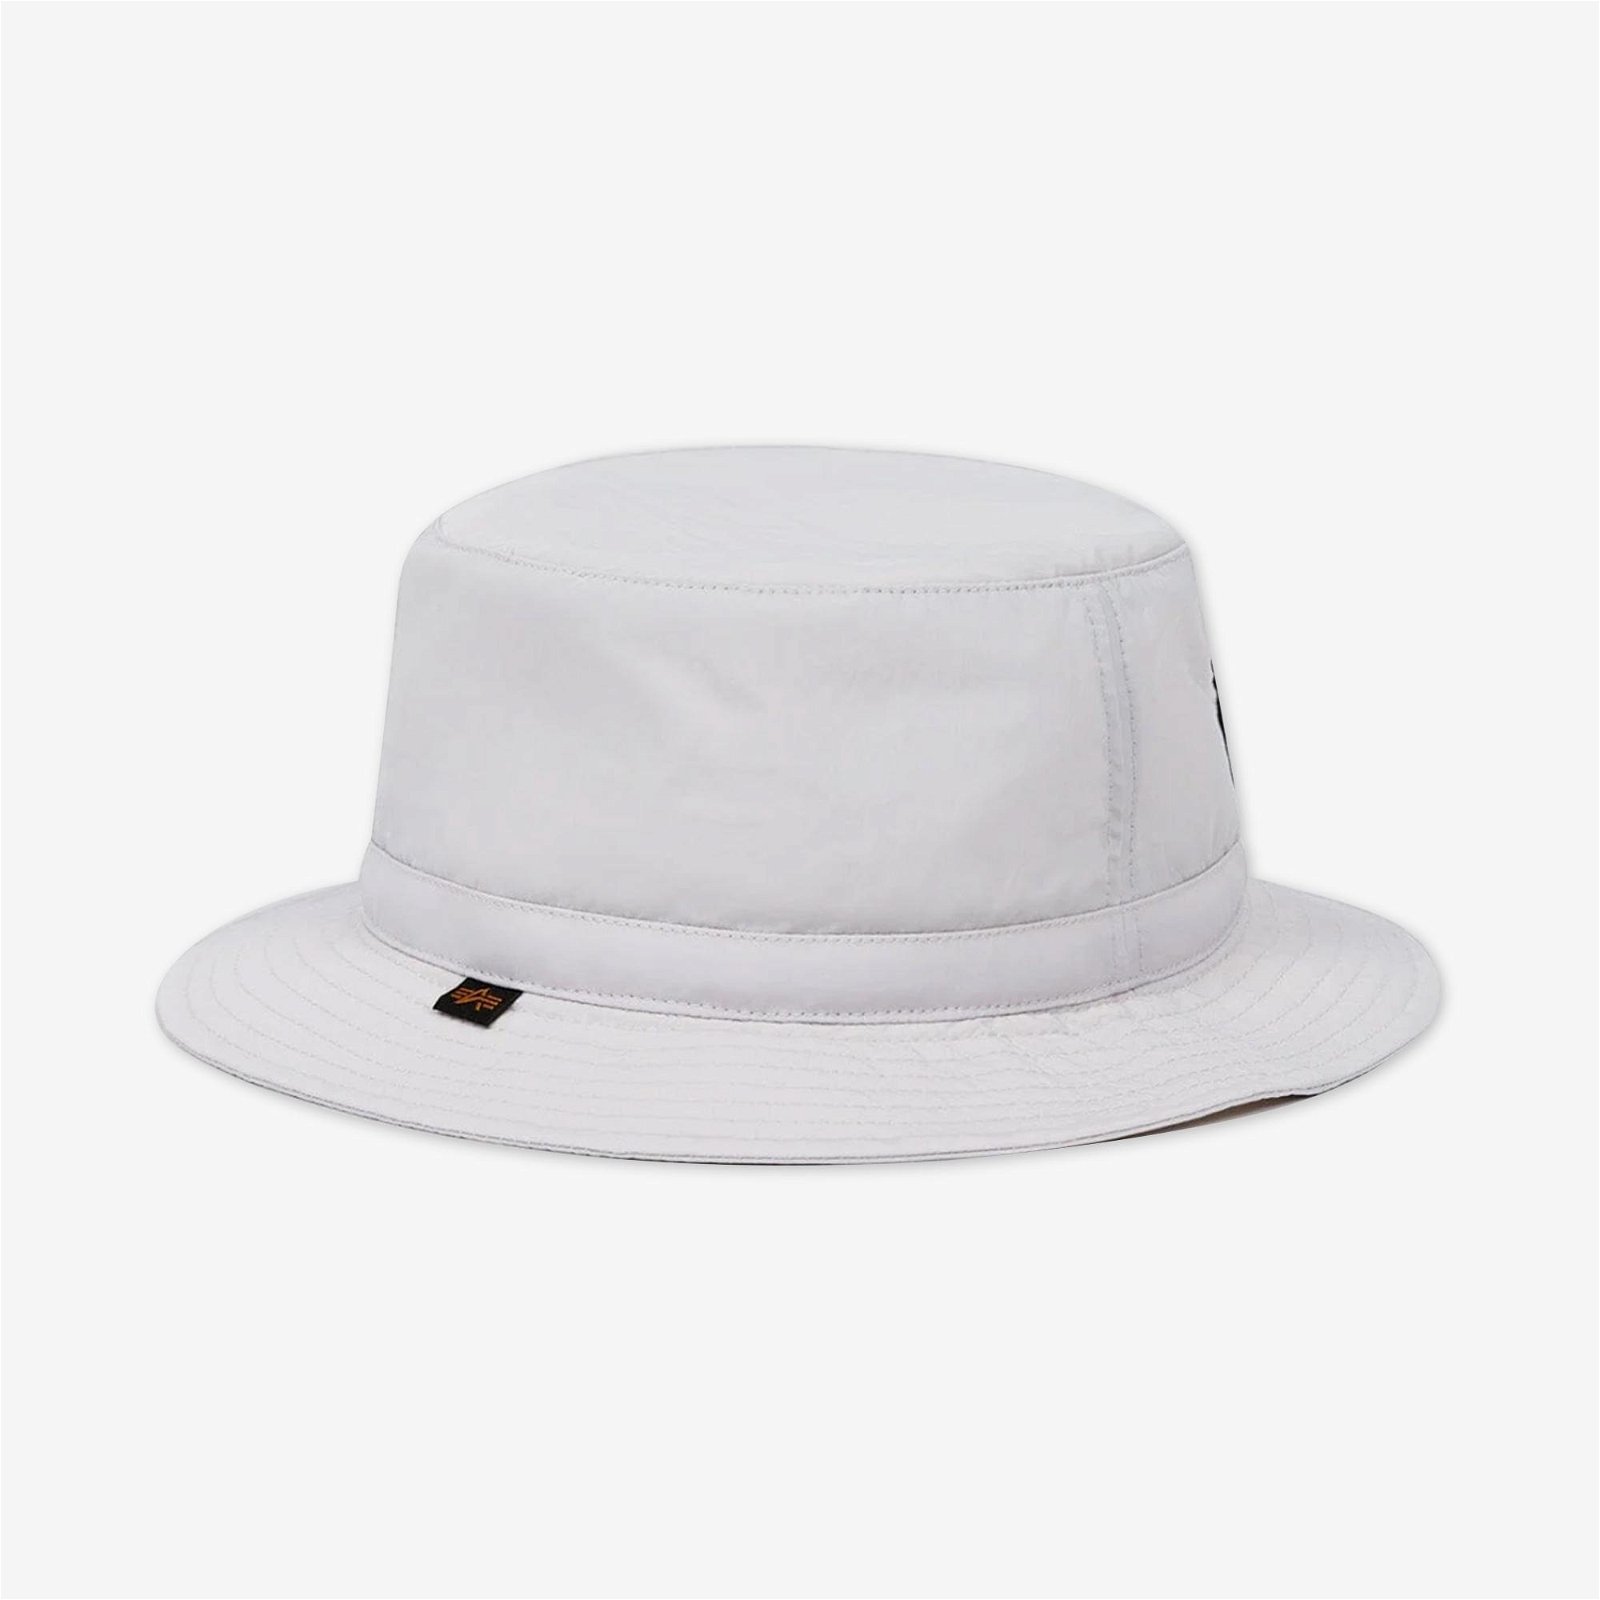 Alpha Industries Nasa Erkek Beyaz Şapka